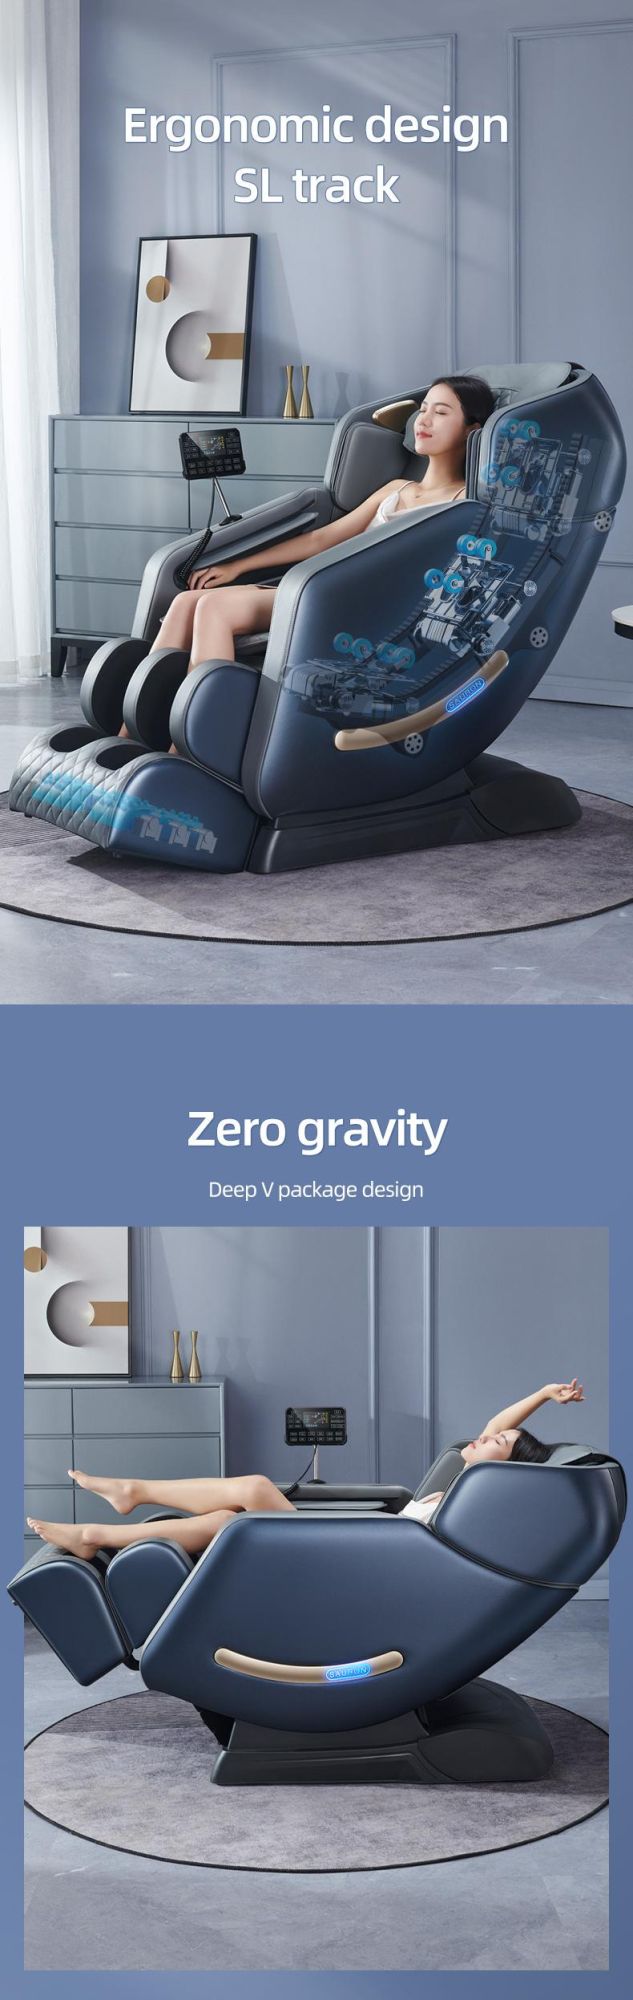   Online Shopping Sillon De Masajes 4D SL Track Chair for Pedicure Massage Shiatsu Full Body Massage Chair Zero Gravity 3D